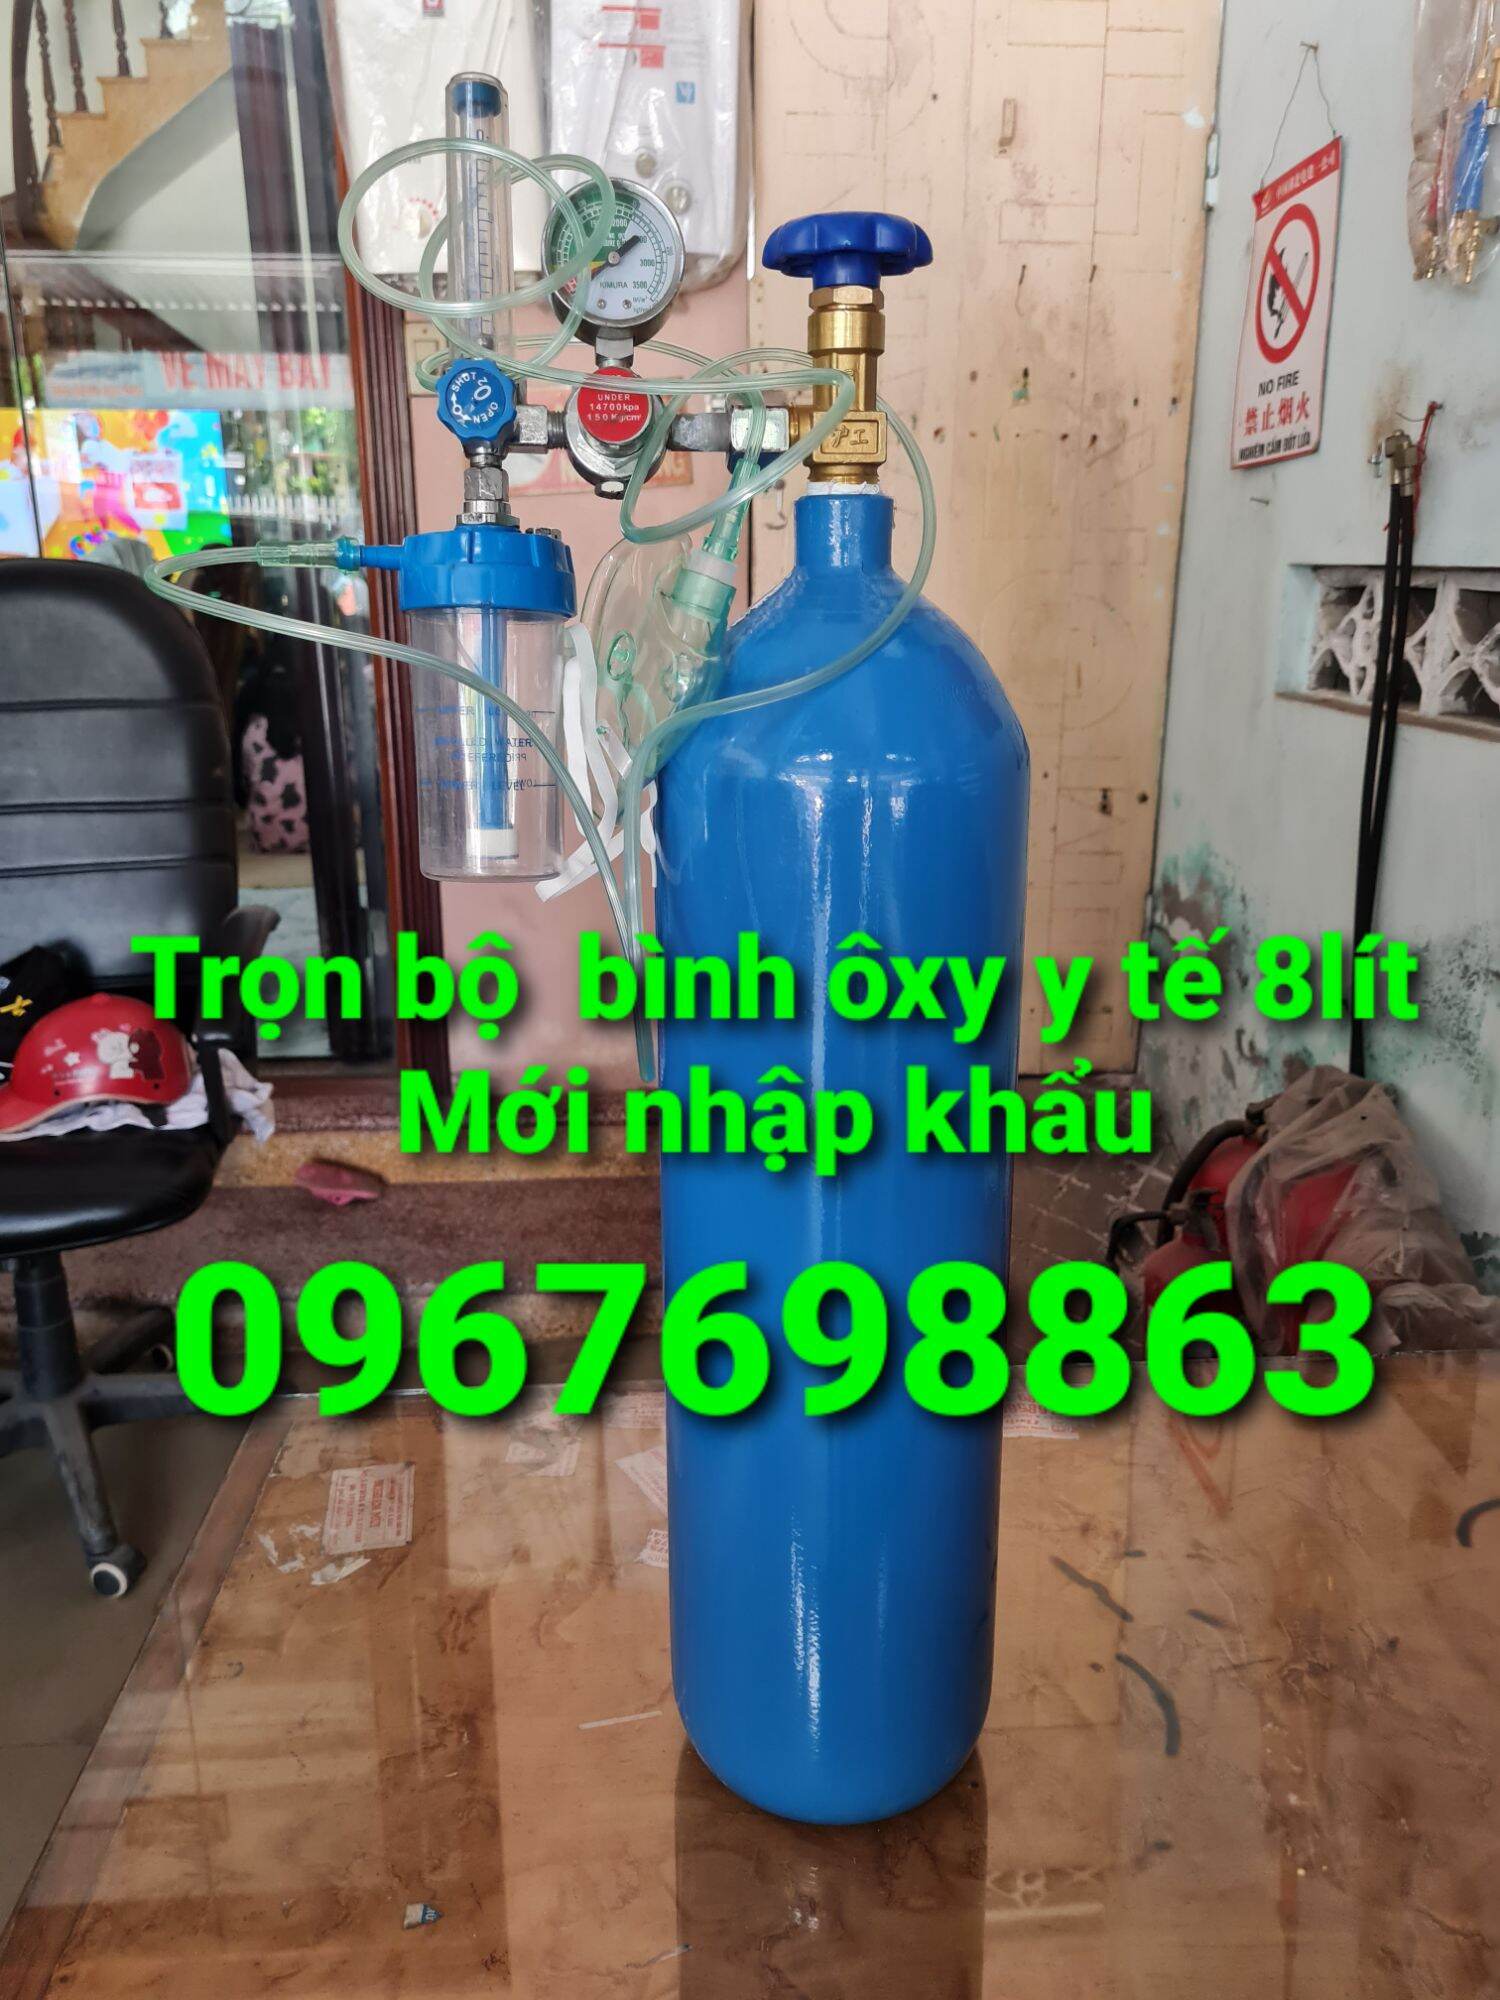 bình ôxy y tế 8lít giao ngay tại Sài Gòn